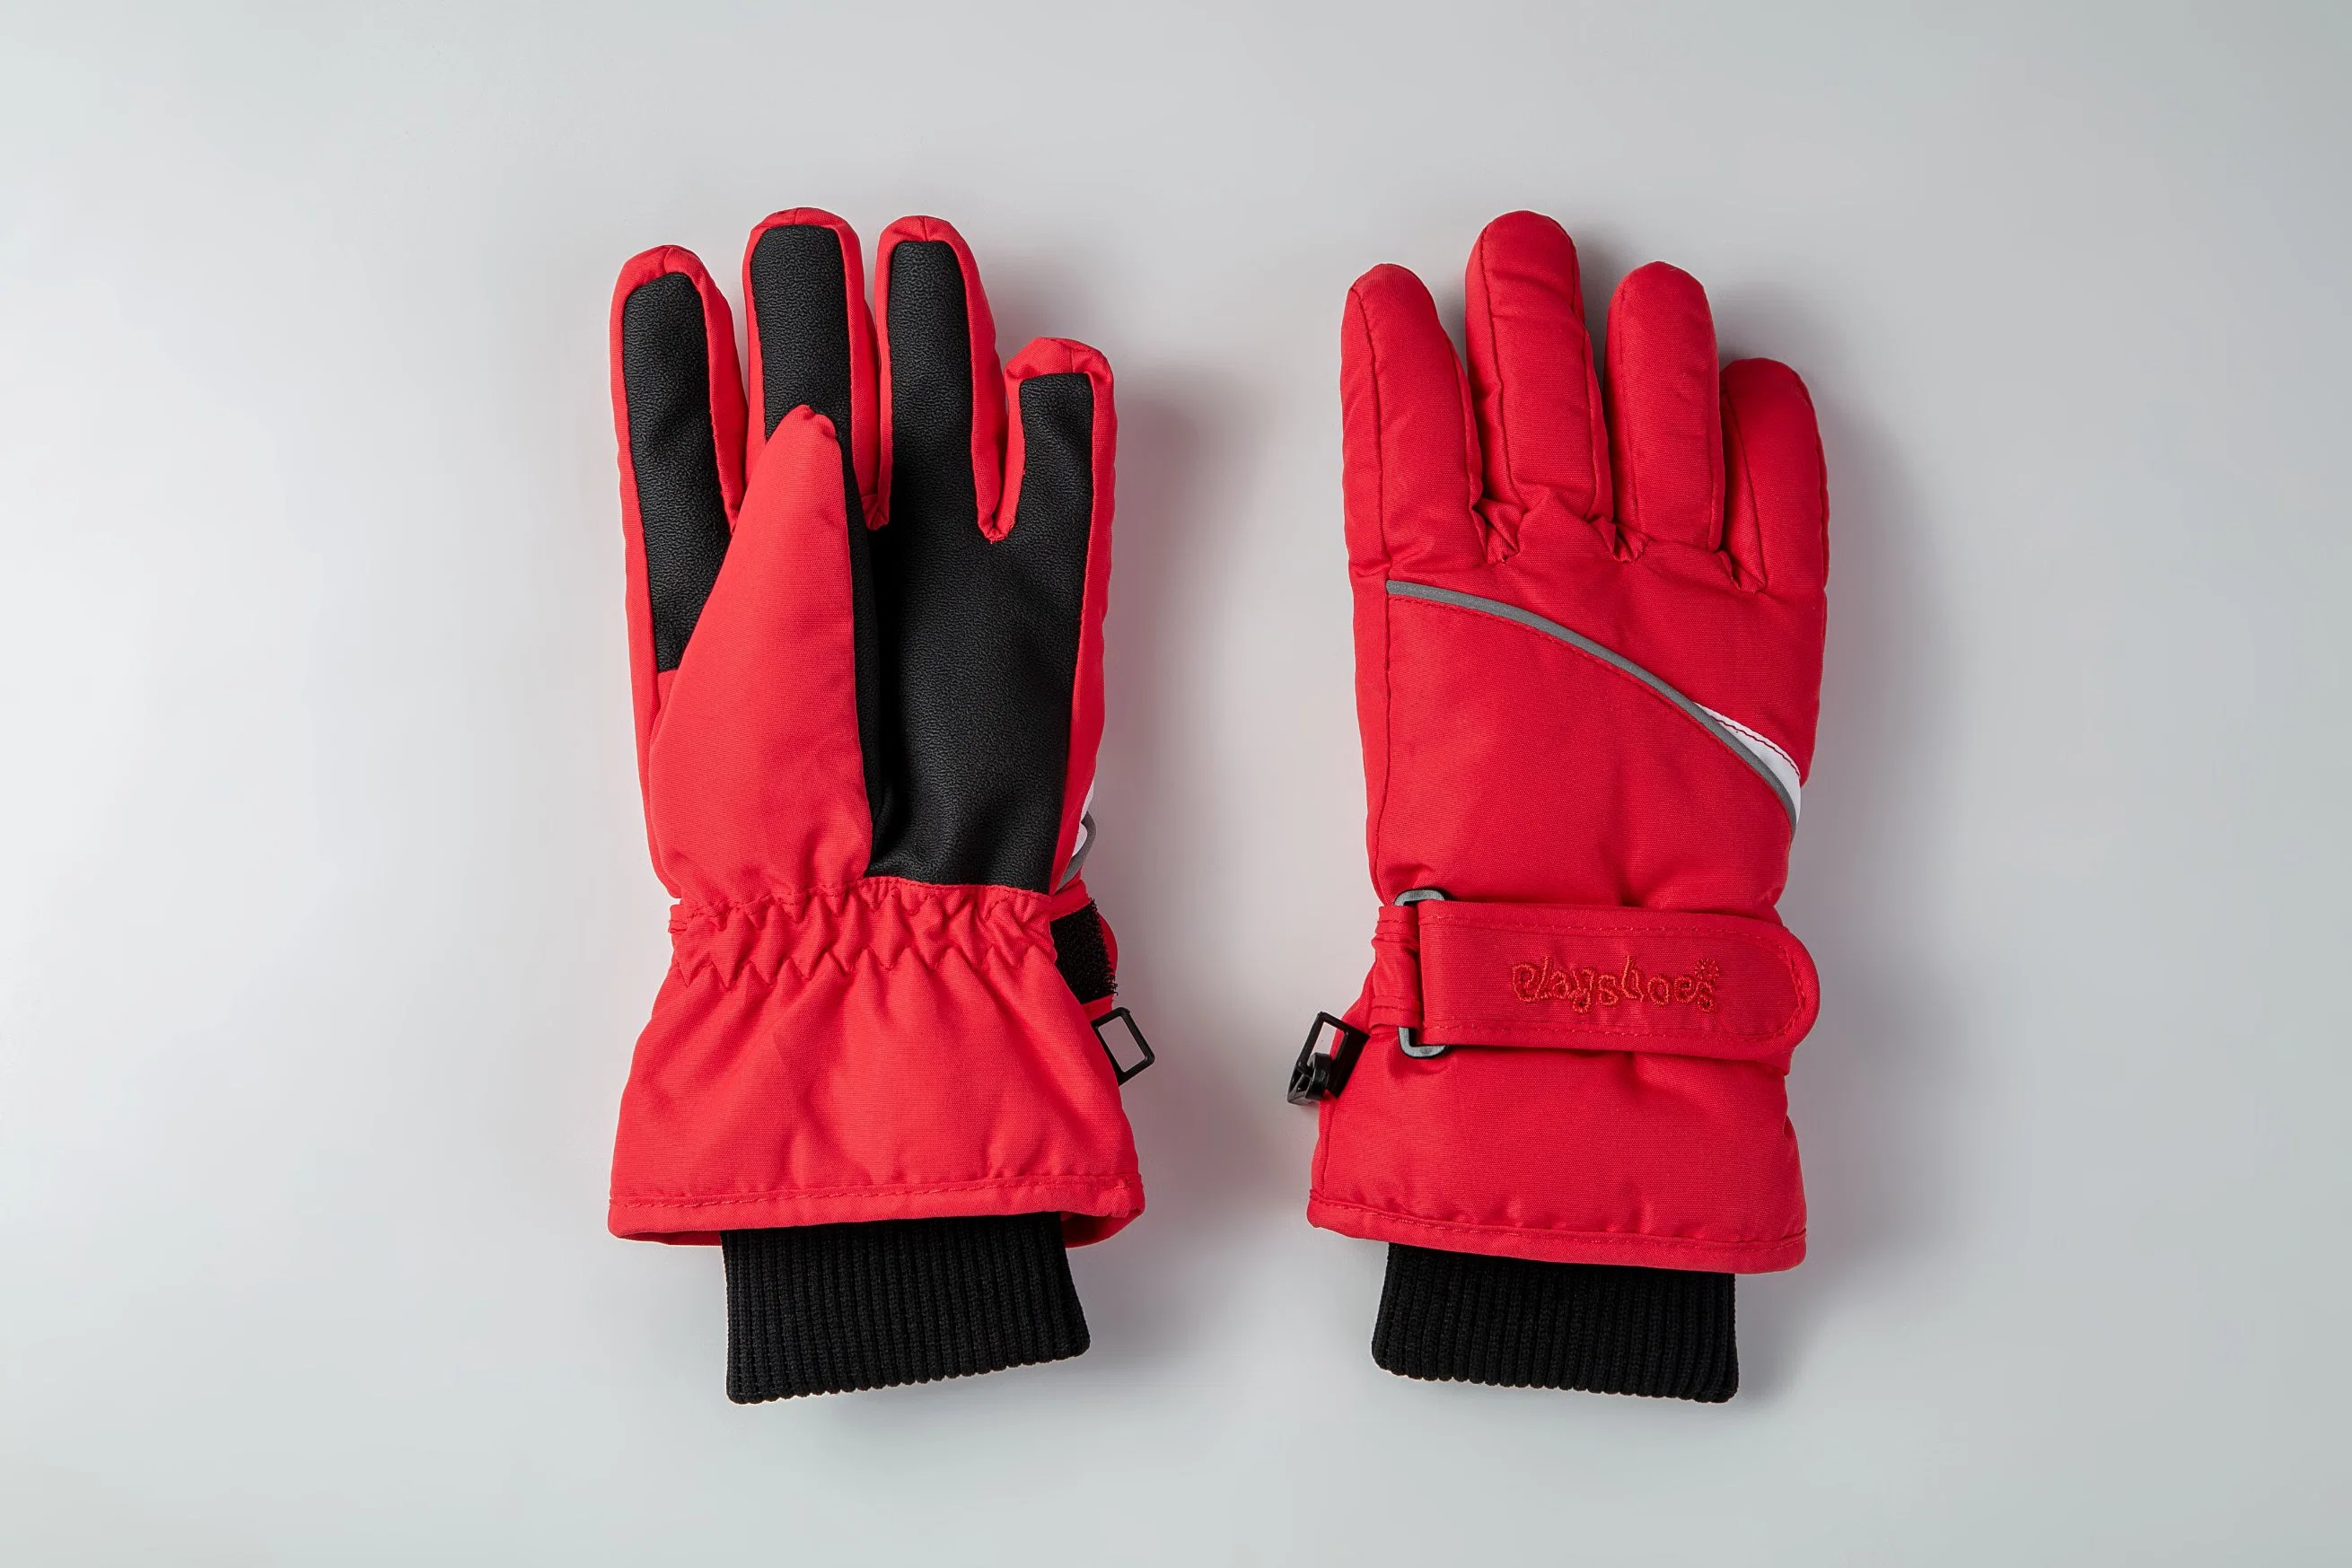 Kids Ski Glove/Kids' Five Finger Glove/ Children Ski Glove/Children Winter Glove/Detox Glove/Okotex Glove/Mitten Ski Glove/ Winter Glove